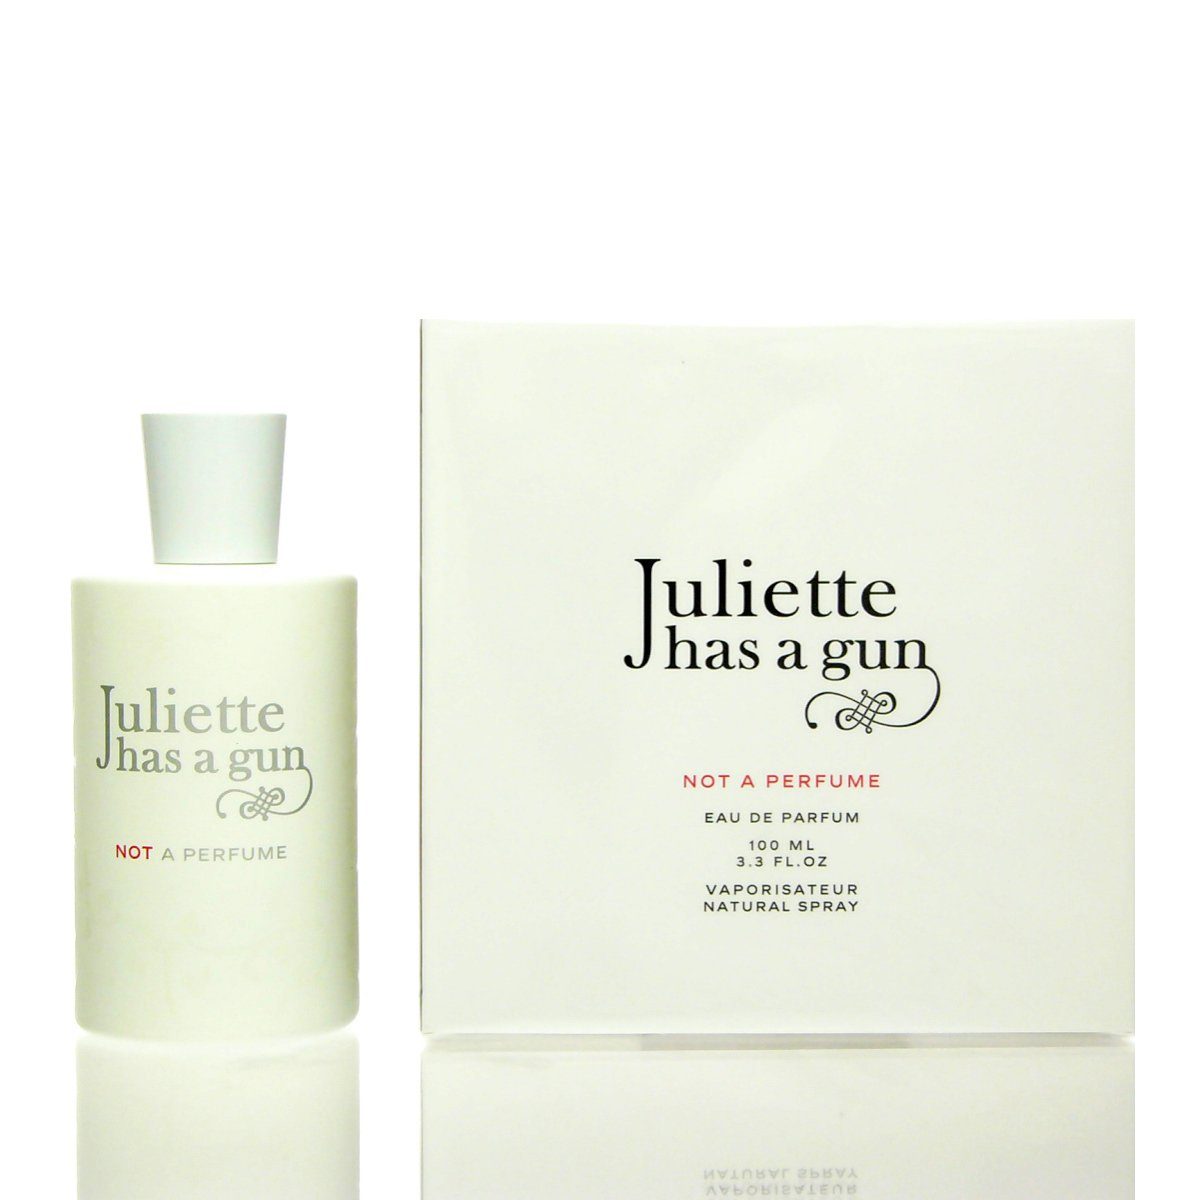 Juliette has a Gun Eau de Parfum Juliette Has a Gun Not a Perfume Eau de Parfum 100 ml